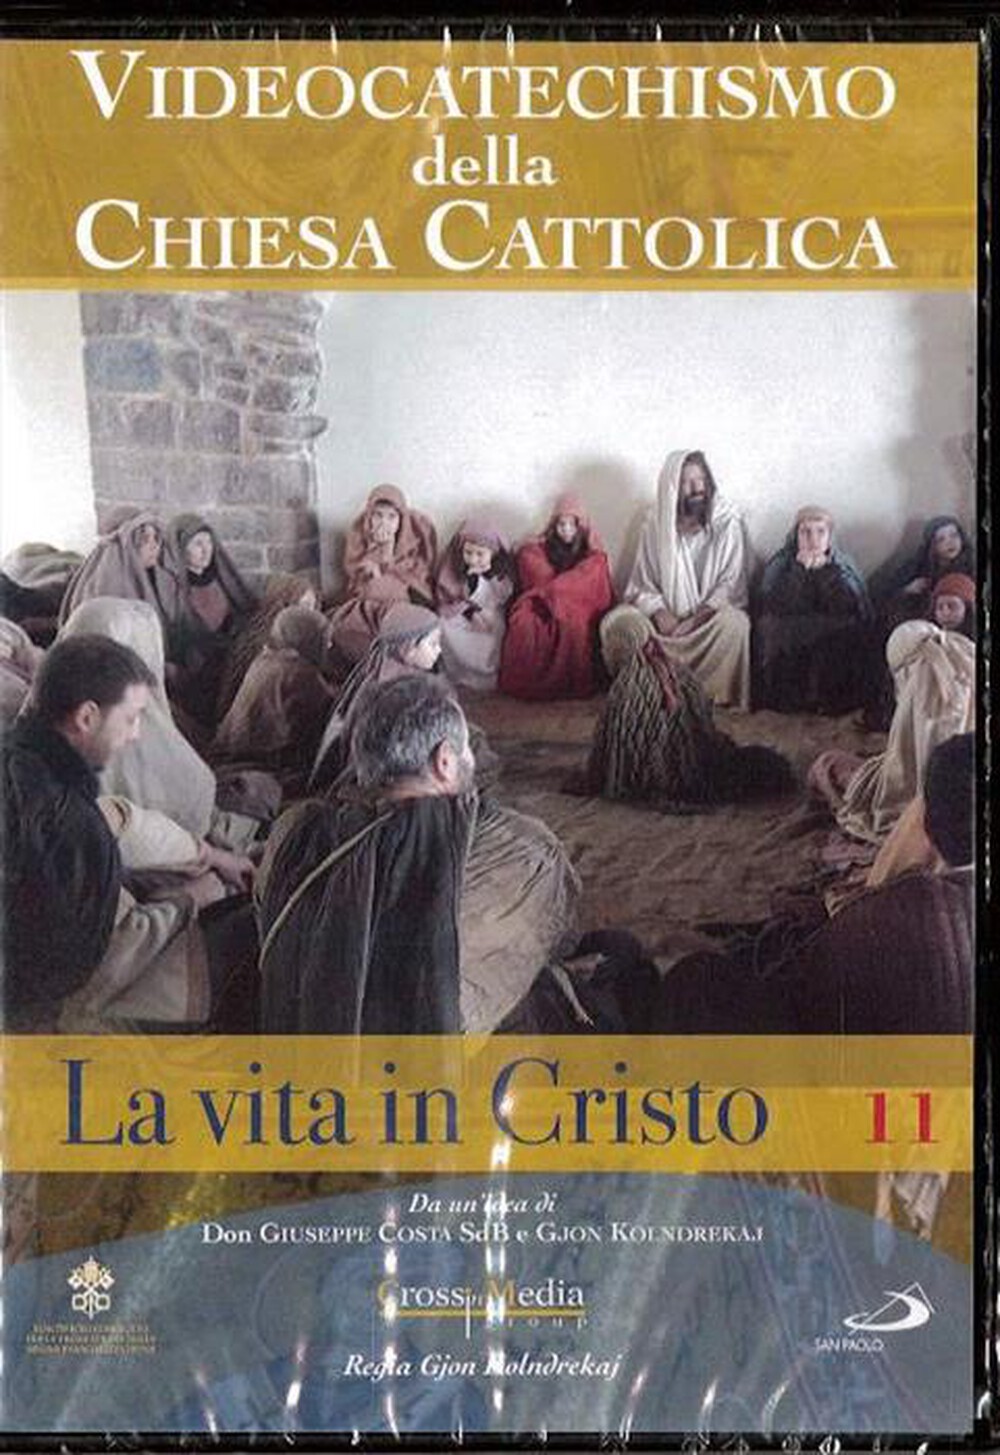 "SAN PAOLO - Videocatechismo #11 - Vita Di Cristo #02"